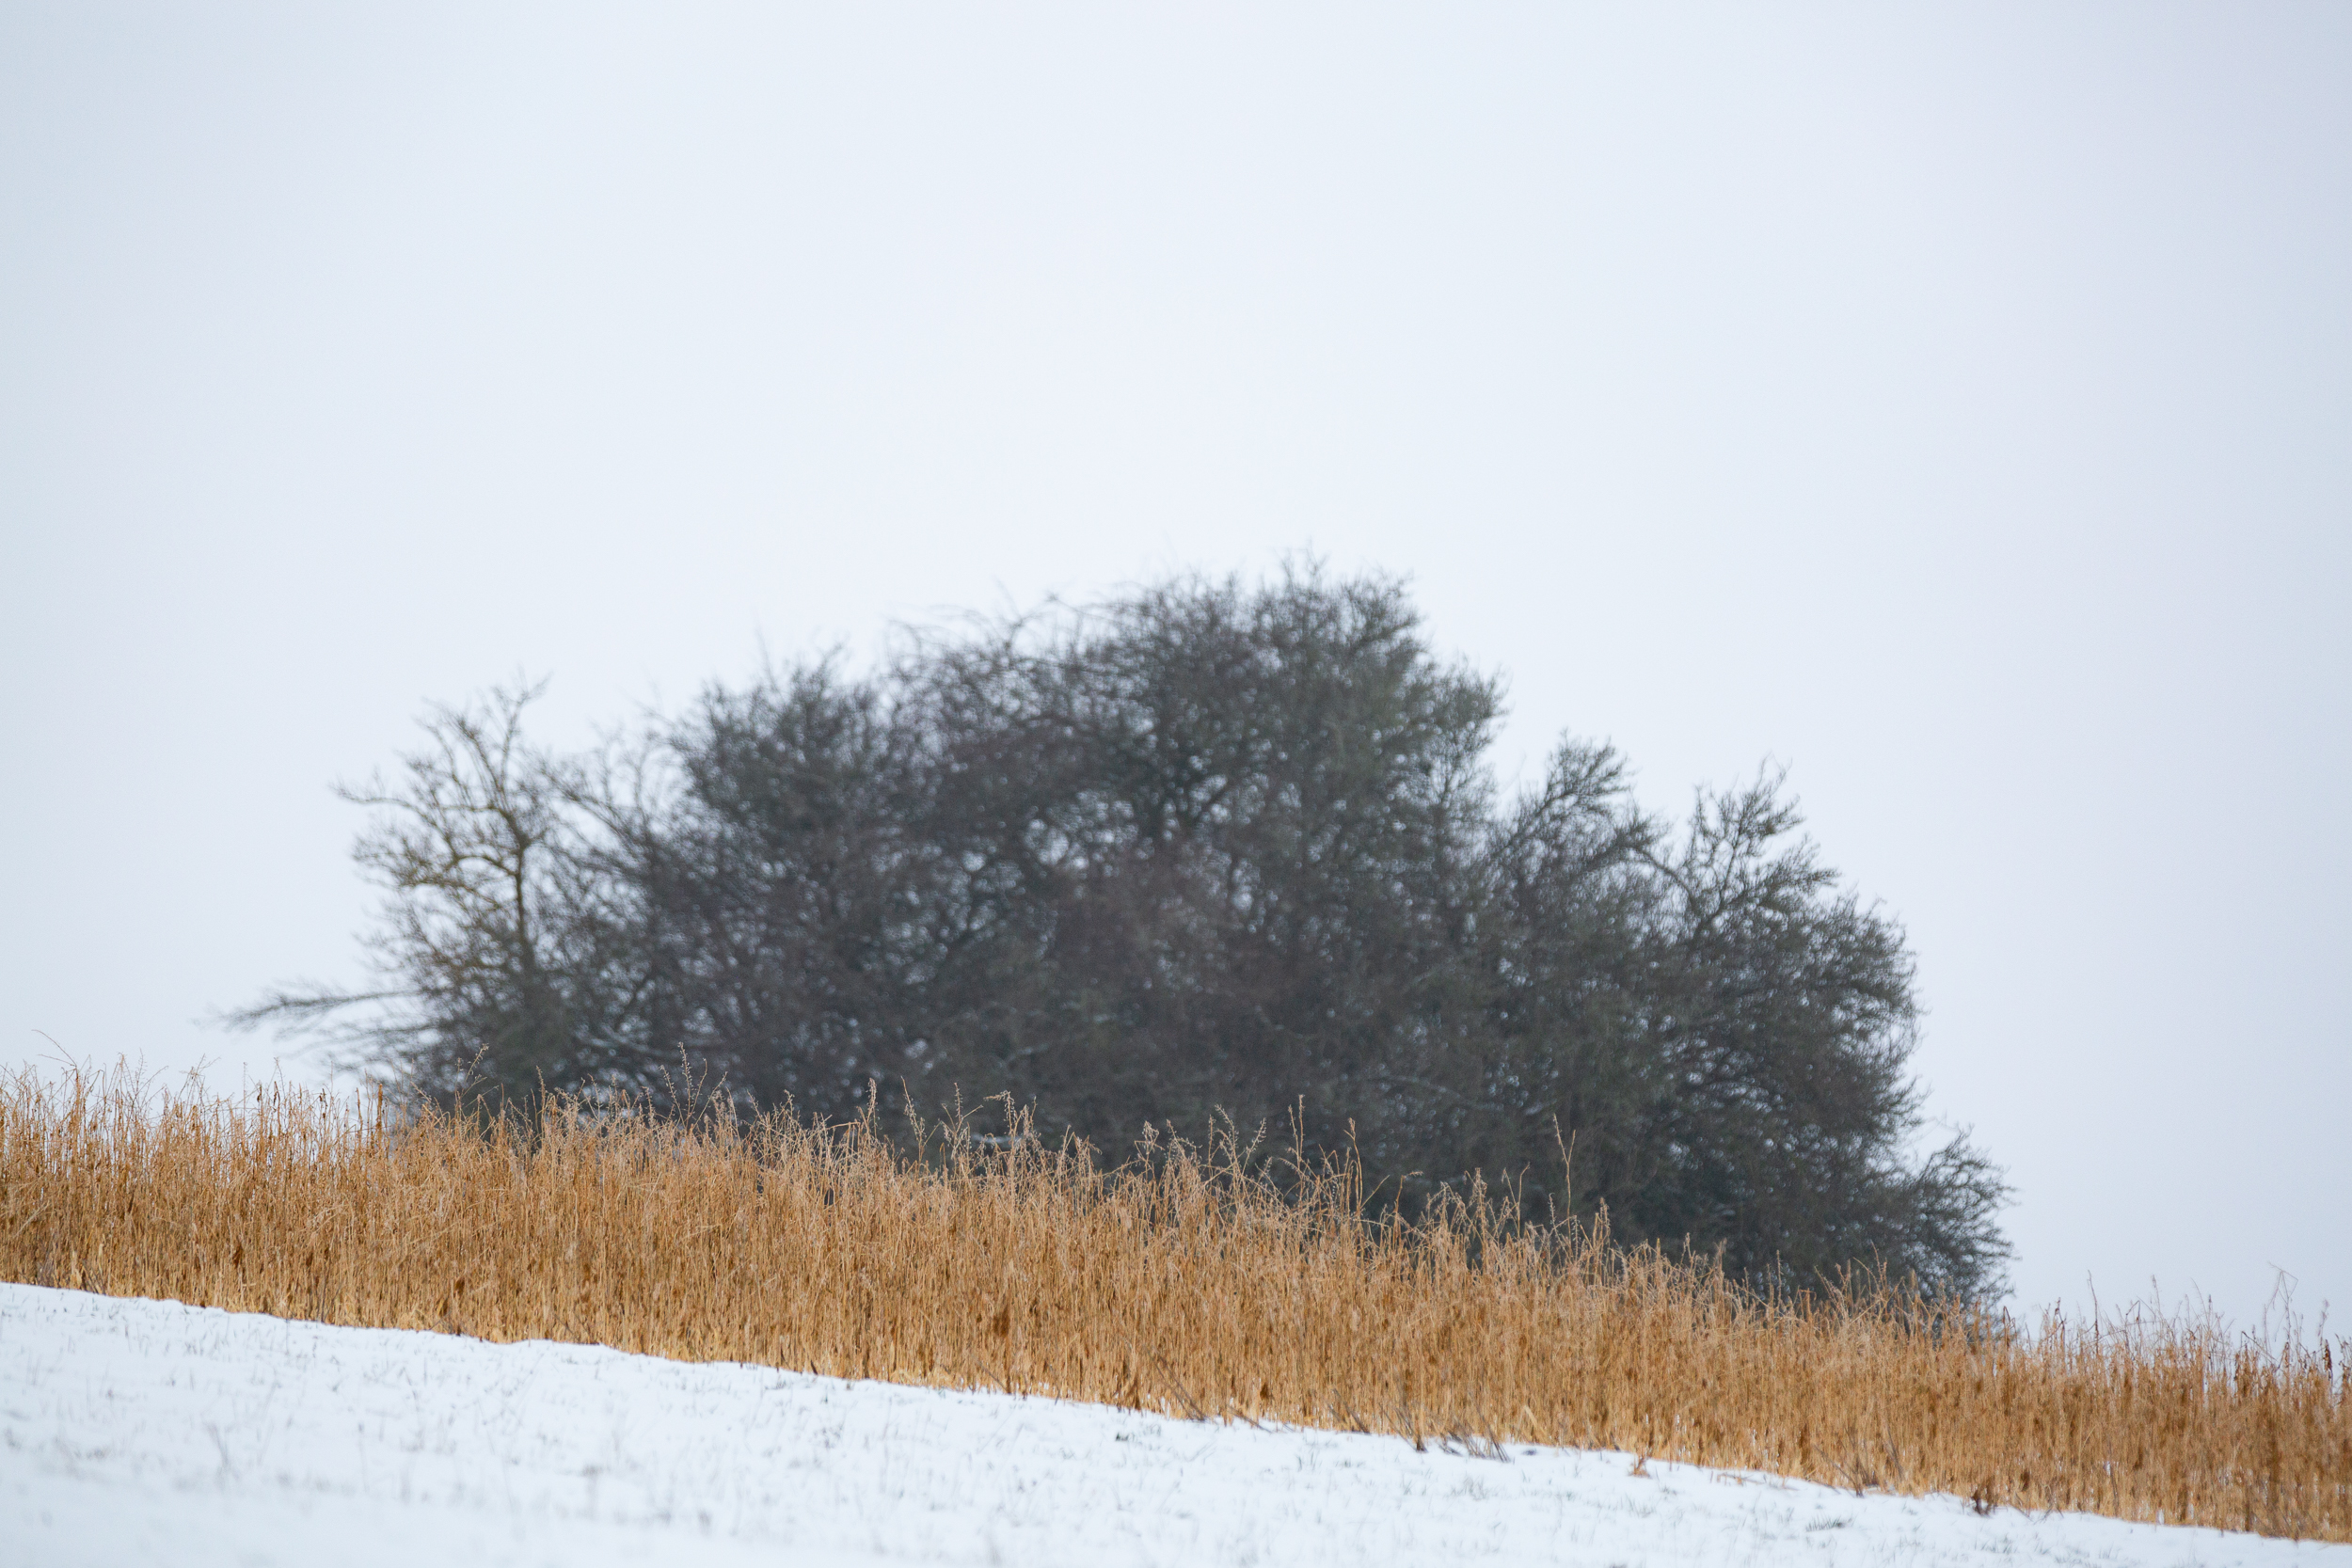 Vertrocknete Gräser auf einer Schneebedeckten Wiese. Im Hintergrund ein kahler Busch.